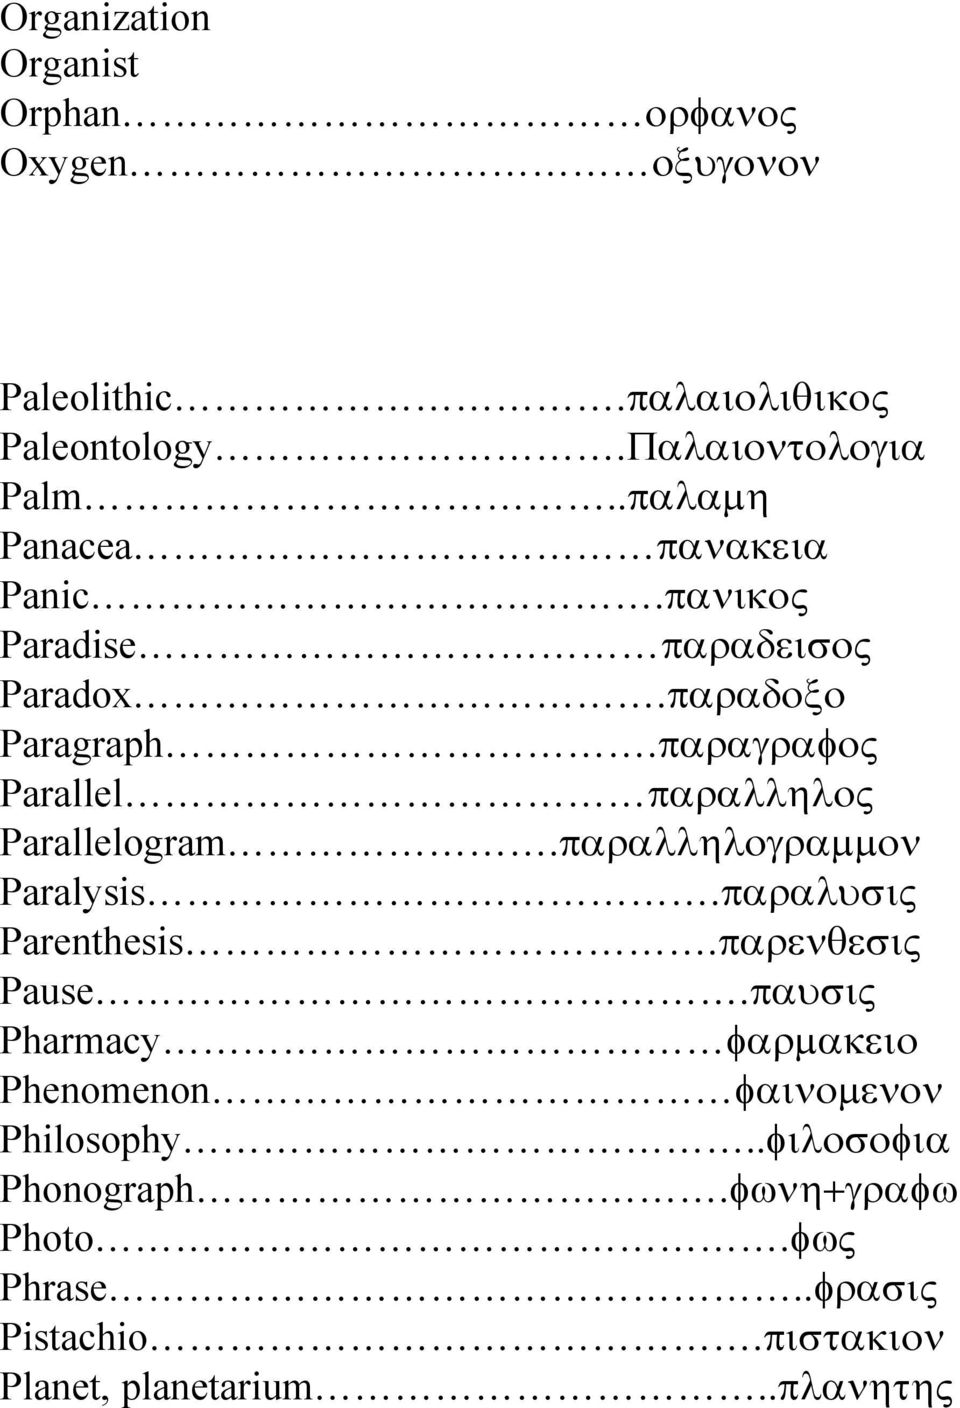 παραγραφος Parallel παραλληλος Parallelogram.παραλληλογραµµον Paralysis.παραλυσις Parenthesis.παρενθεσις Pause.